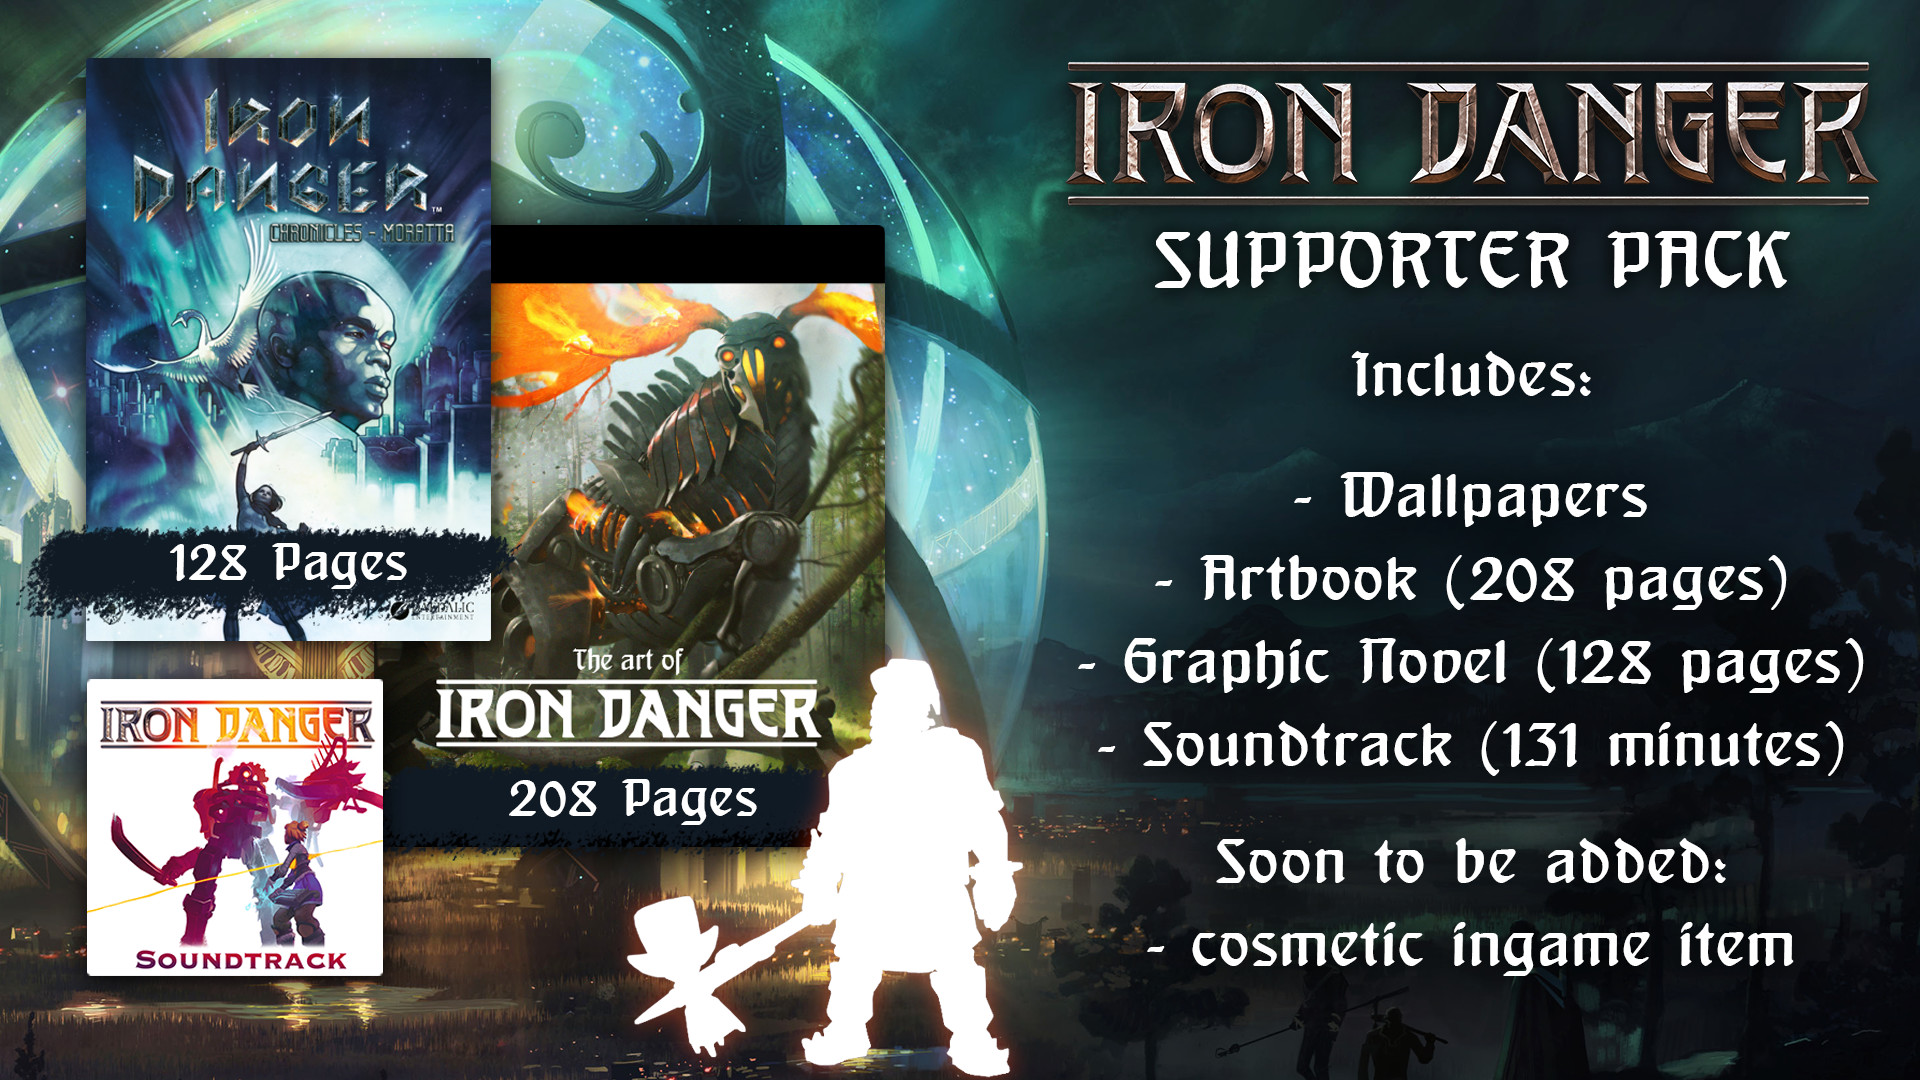 Iron Danger - Supporter Pack DLC Steam CD Key 4.51 $